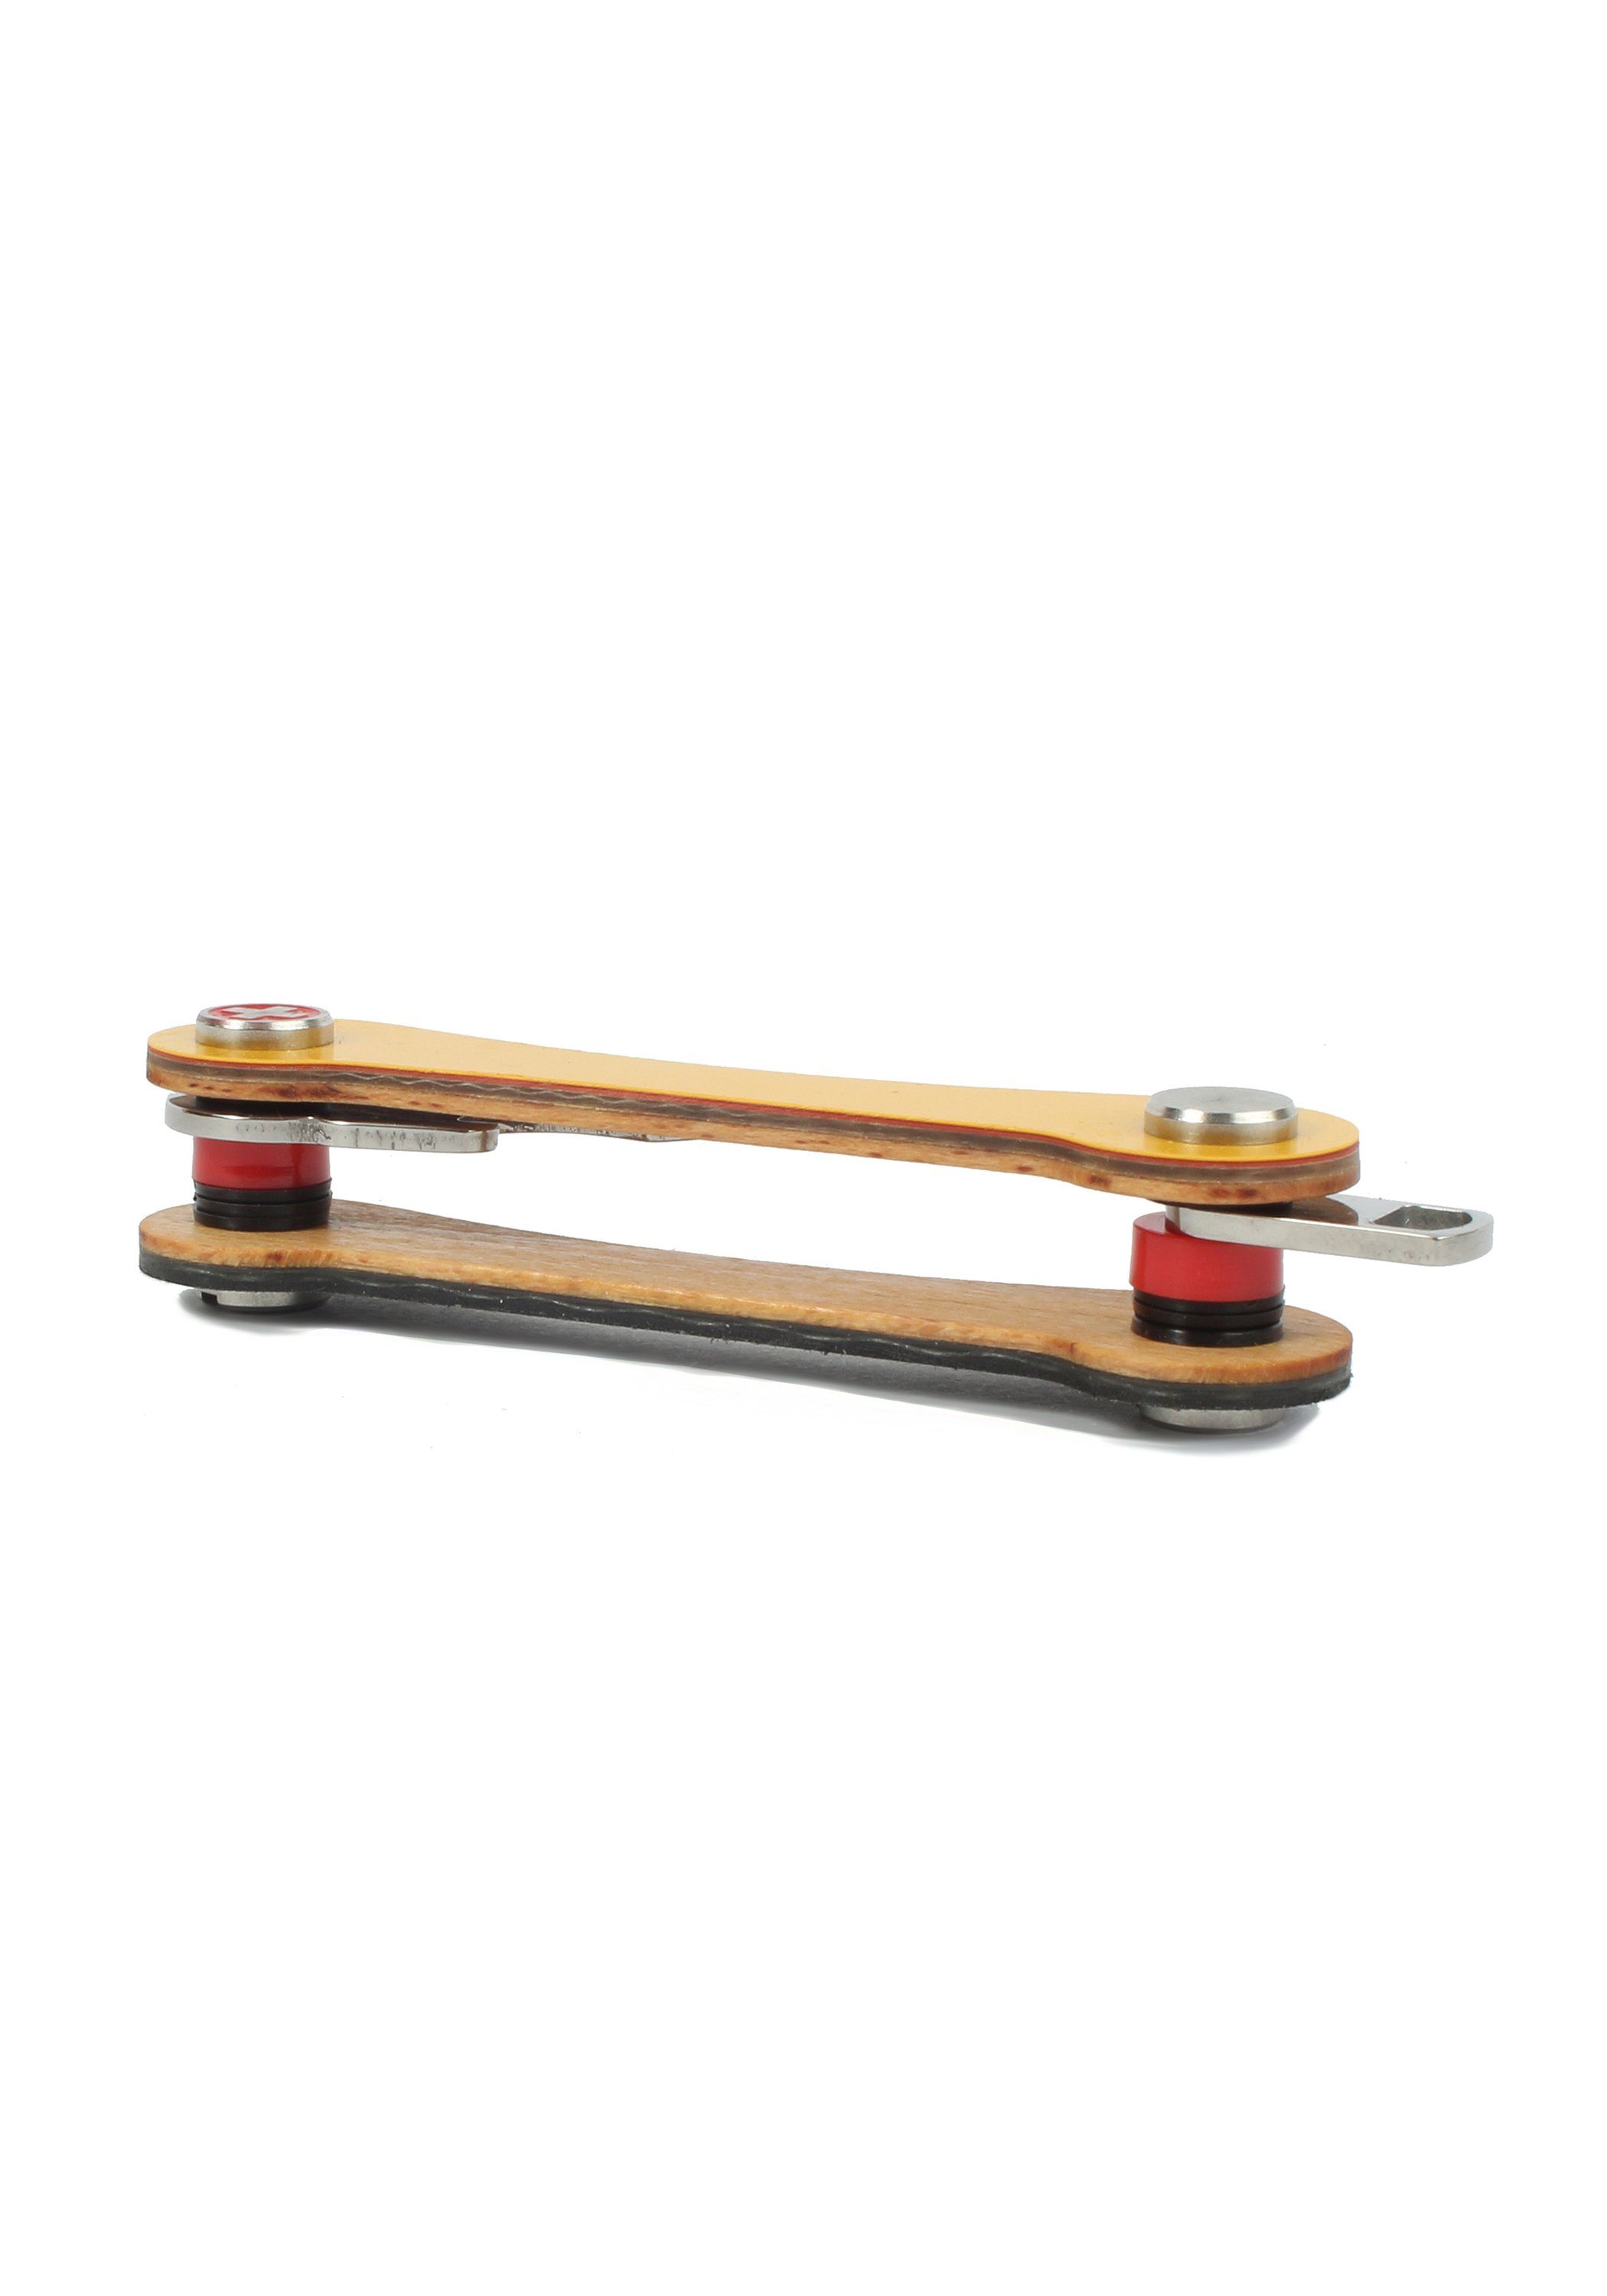 SWISS orange keycabins Schlüsselanhänger S1, Snowboard-Ski made